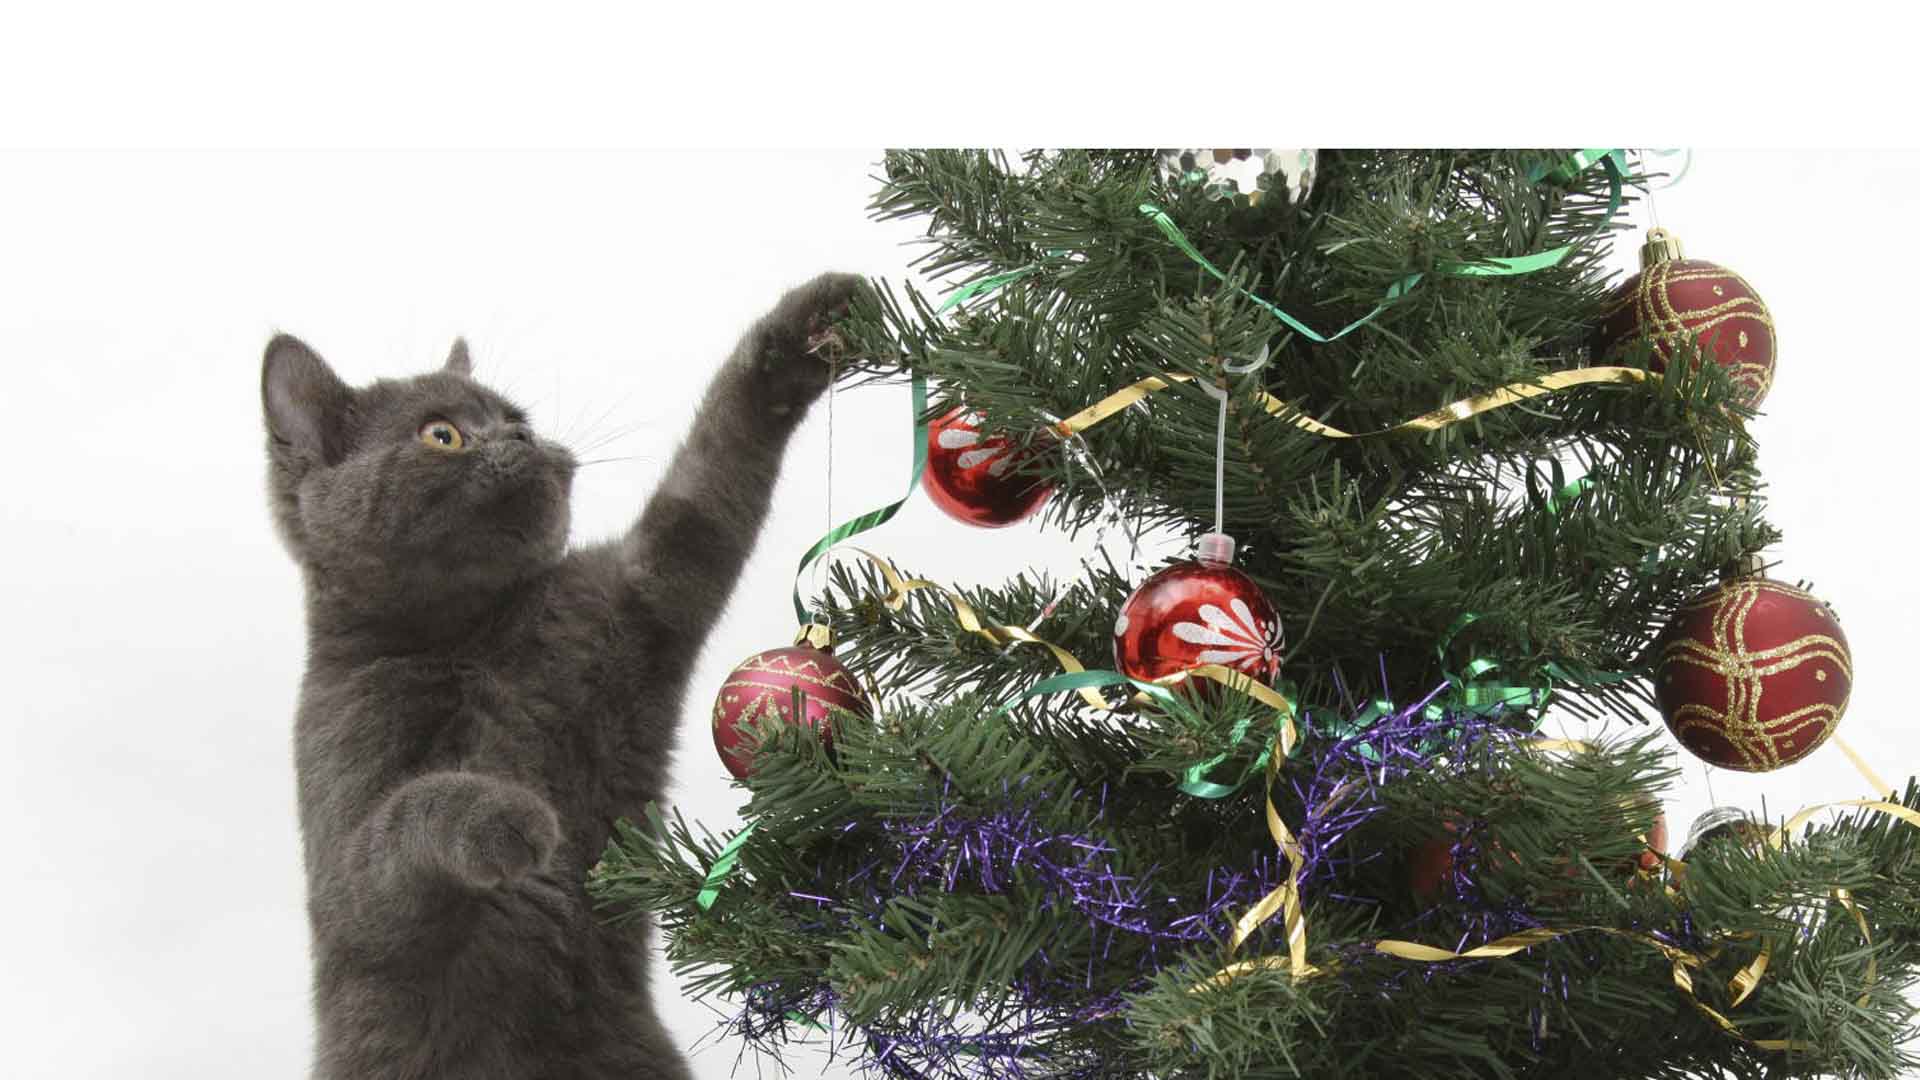 En Navidad los gatos aman jugar con las luces y ornamentos de los pinos